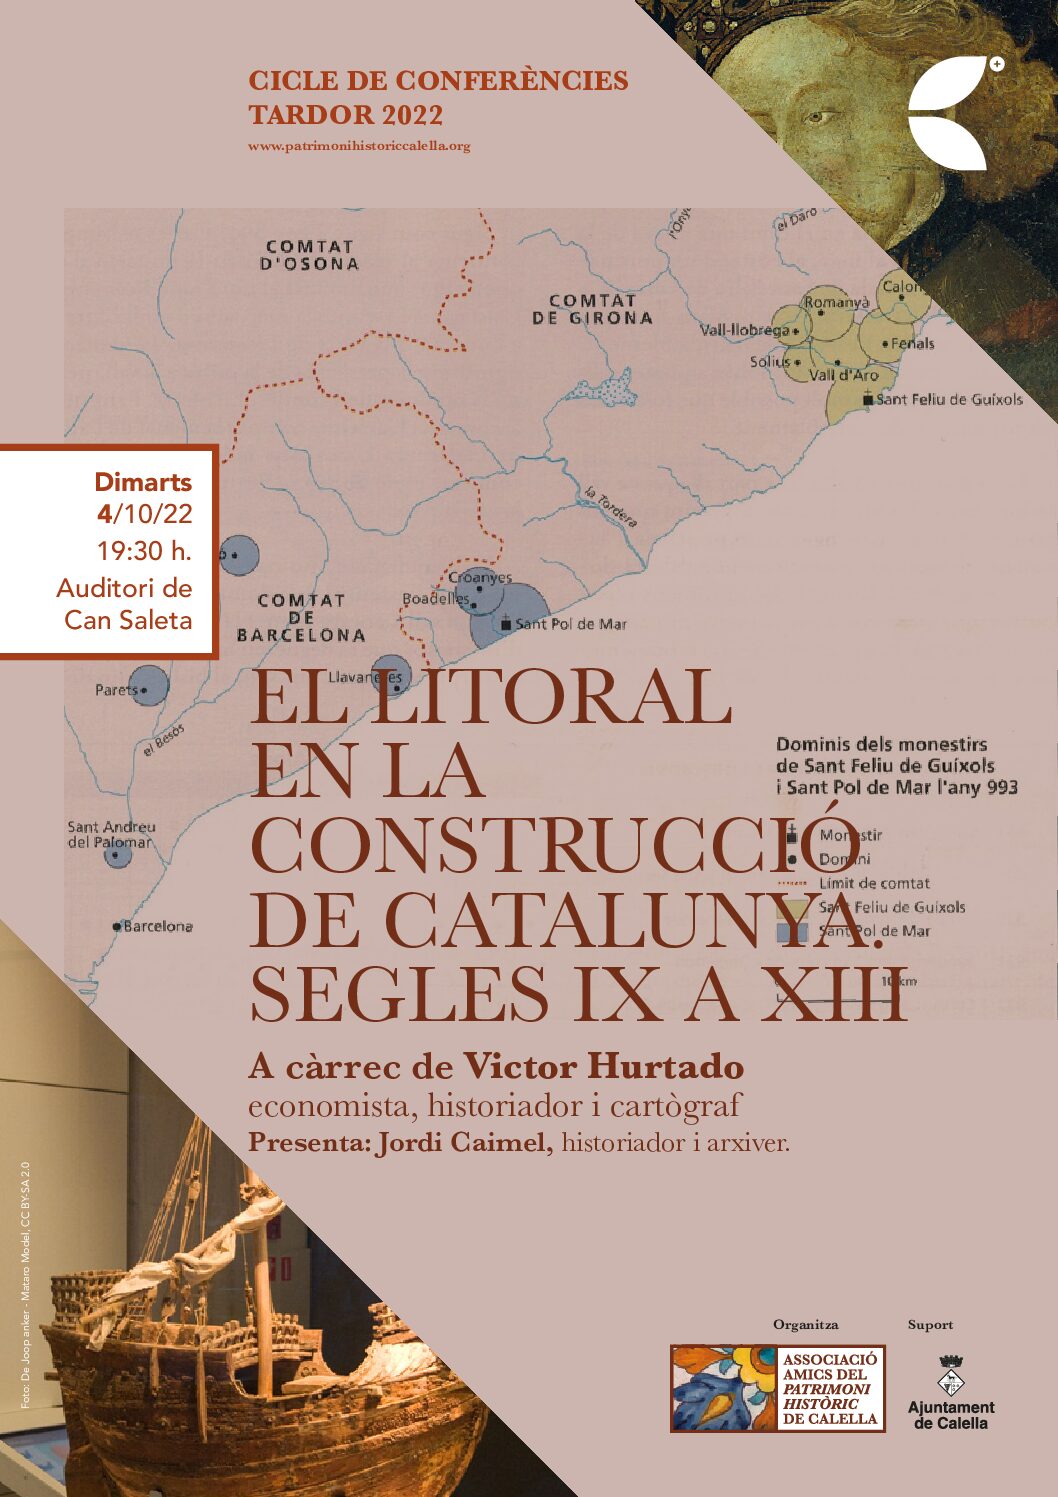 Nova conferència organitzada per l’AAPHC: “EL LITORAL EN LA CONSTRUCCIÓ DE CATALUNYA. SEGLES IX A XIII” a càrrec de Víctor Hurtado